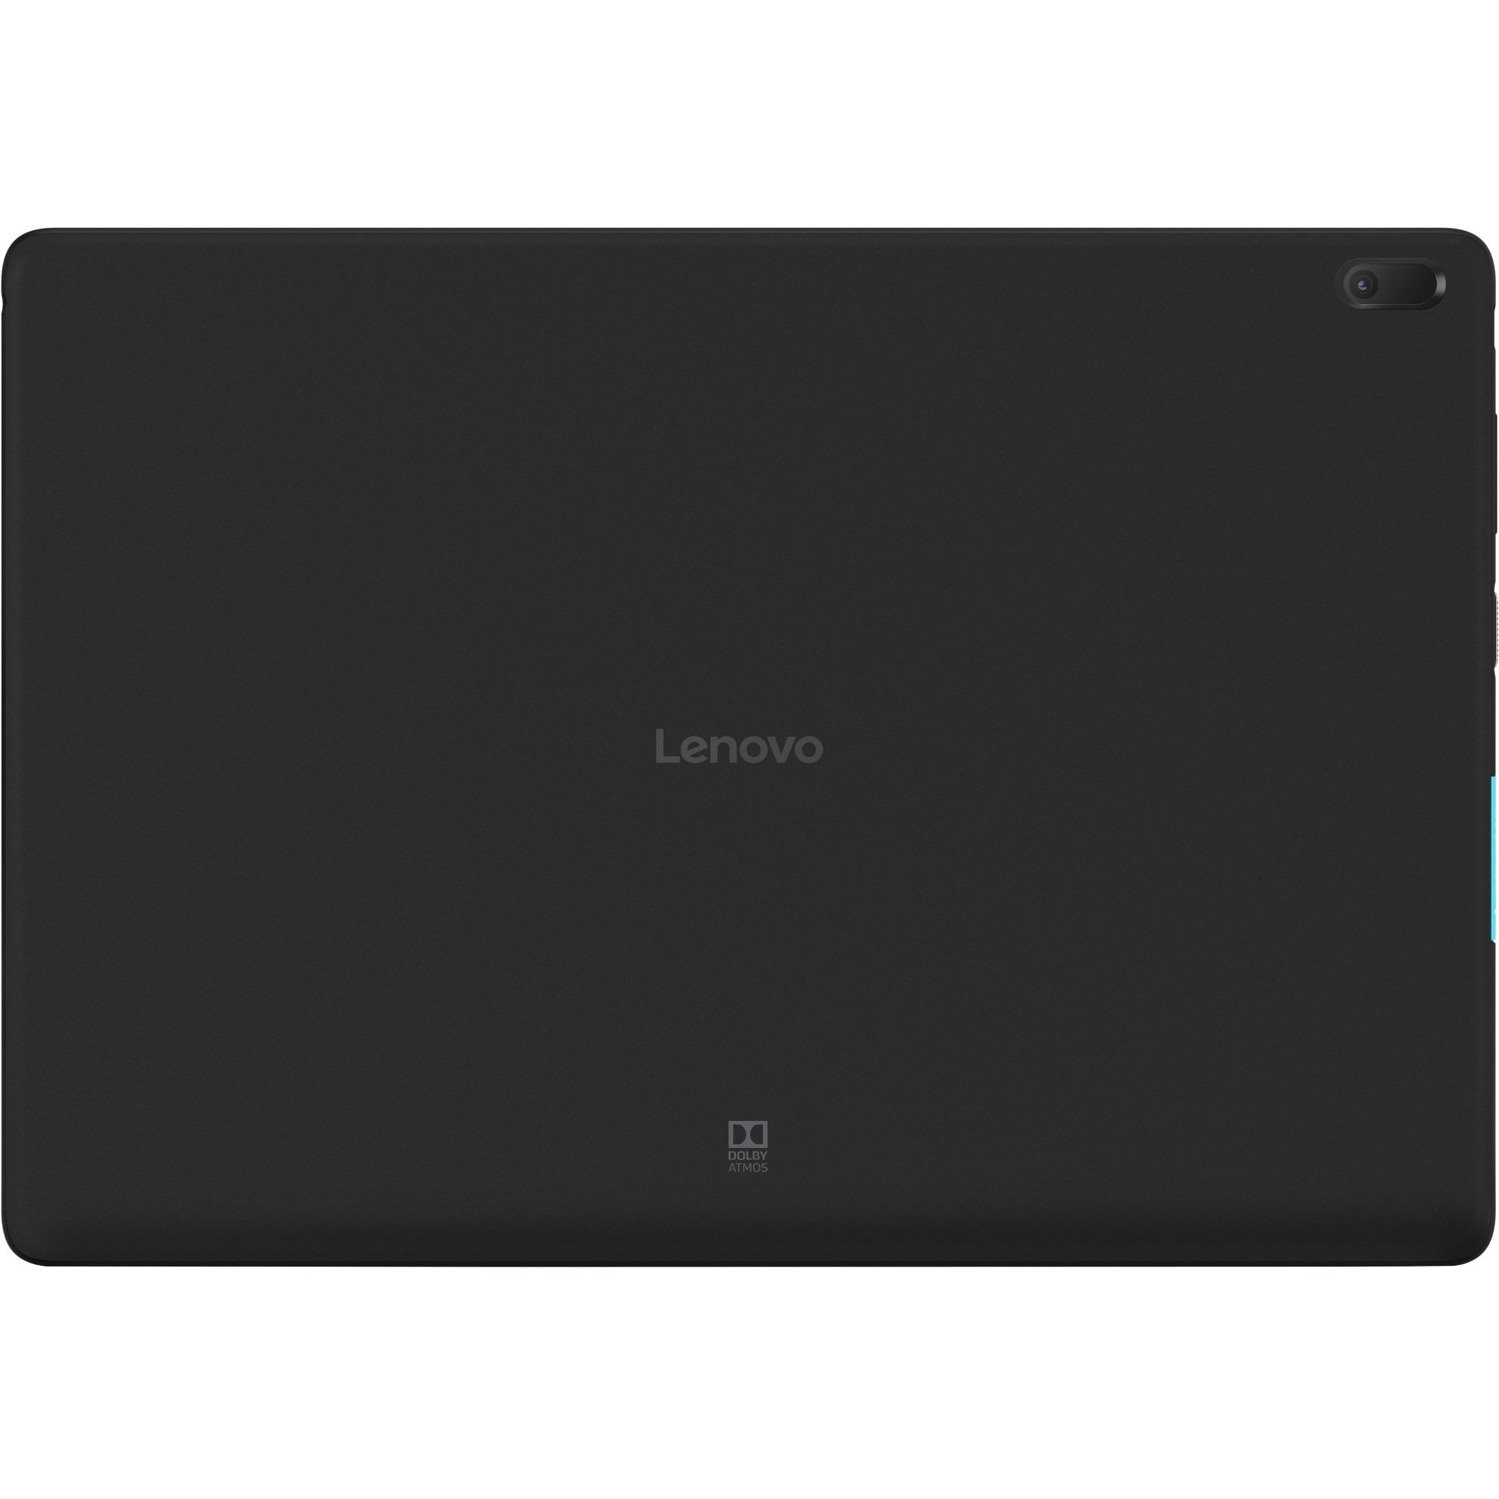 Lenovo Tab E10 TB-X104F Tablet - 25.7 cm (10.1") - Qualcomm Snapdragon 210 APQ8009 - 2 GB - 32 GB Storage - Android 8.1 Oreo - Slate Black